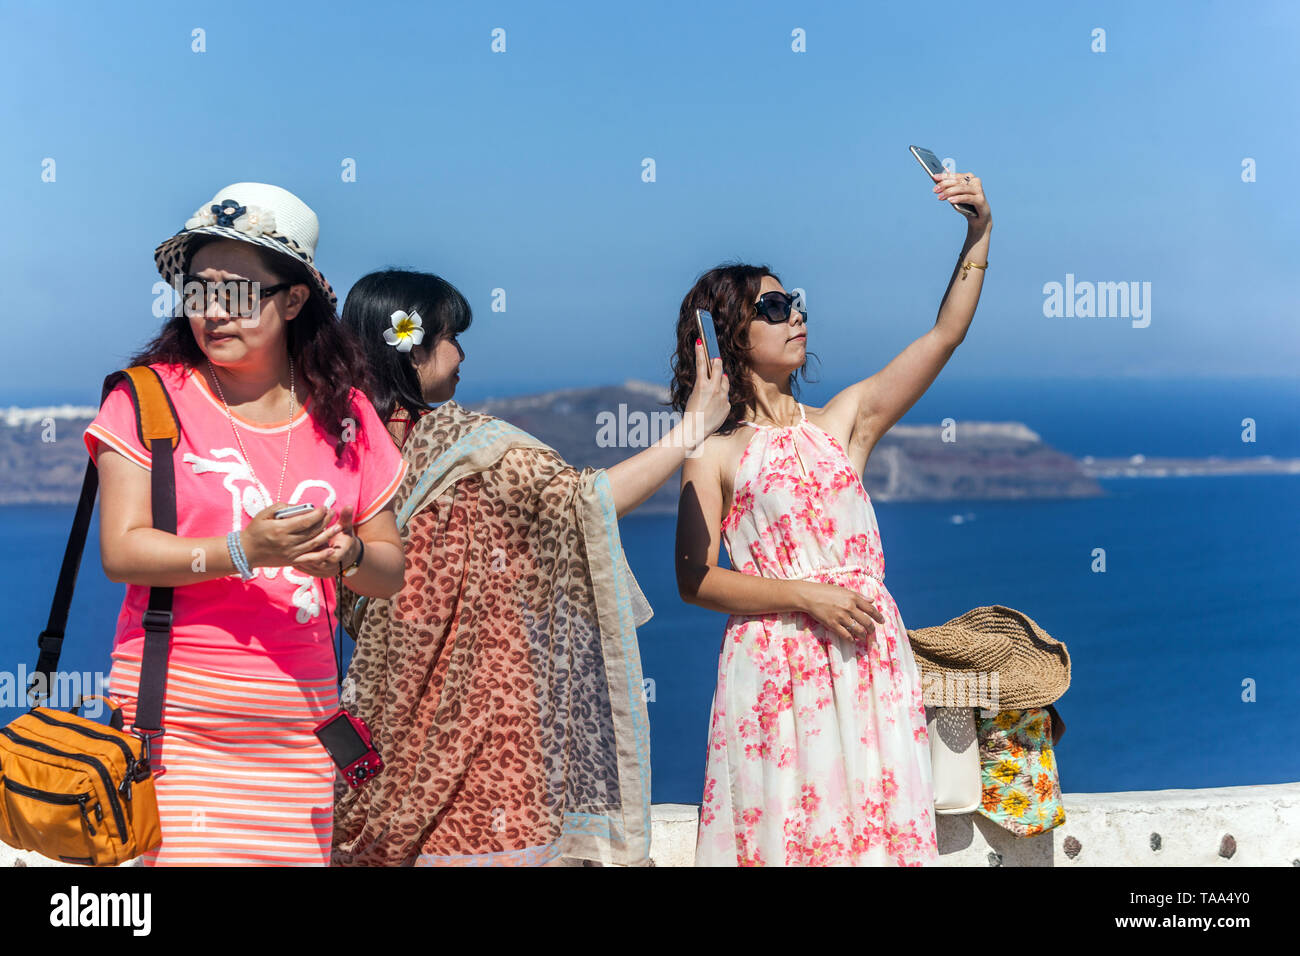 Grèce Santorin, les gens, les touristes, les jeunes femmes asiatiques prenant une photo au téléphone, l'Europe, les gens en vacances Banque D'Images